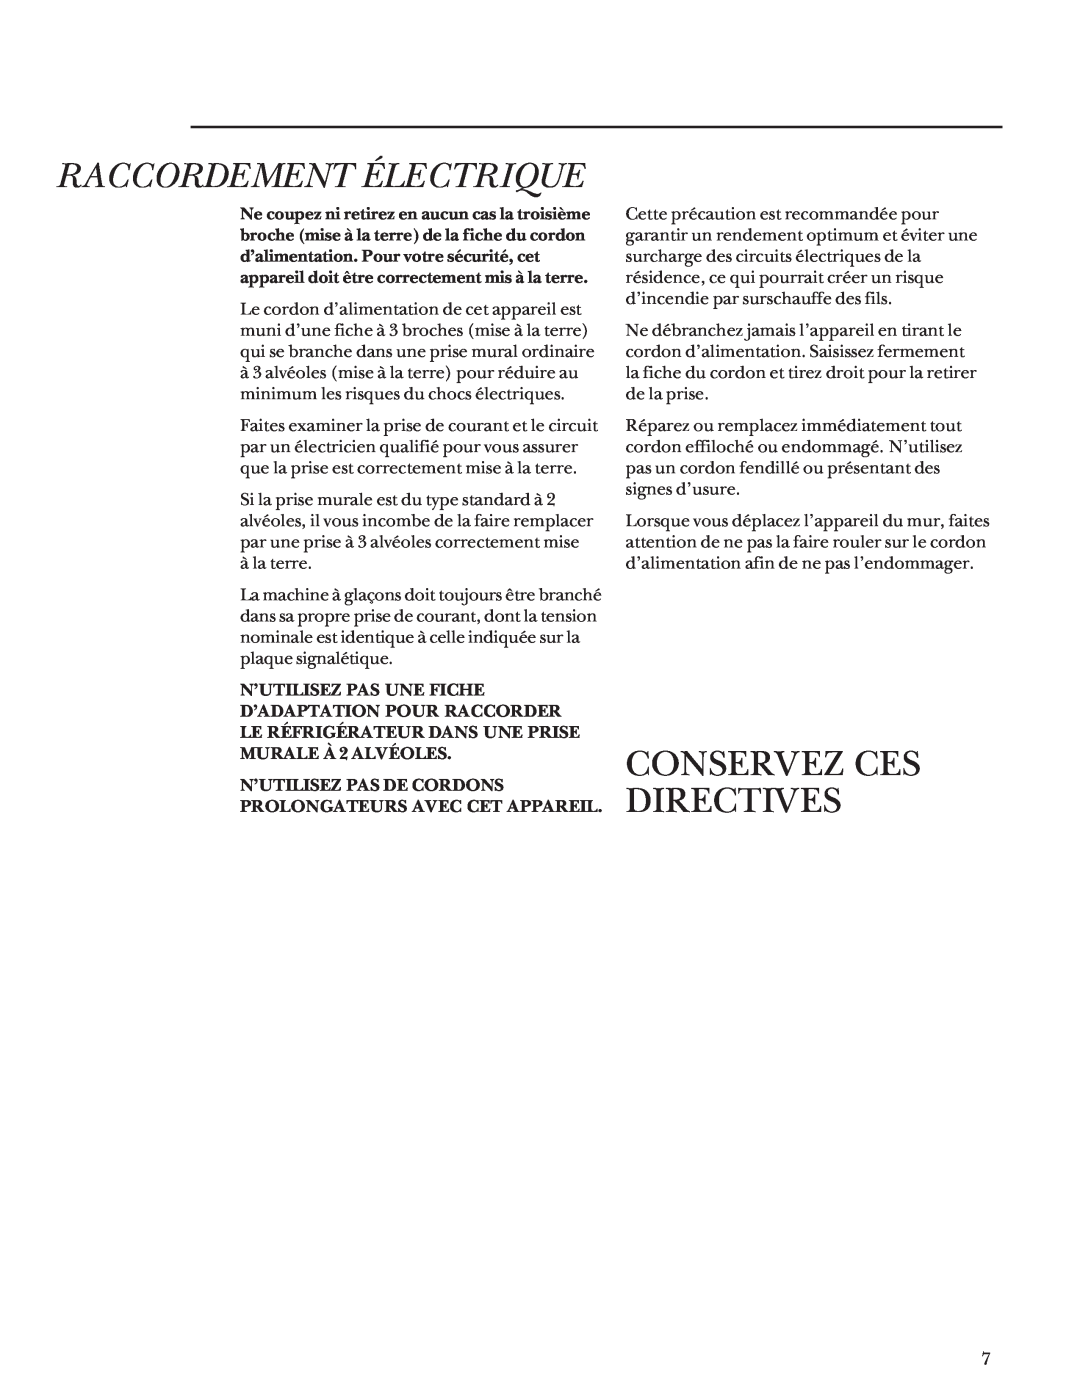 GE Monogram Bottom Mount Built-In Refrigerators manual Raccordement Électrique, Conservez Ces Directives 